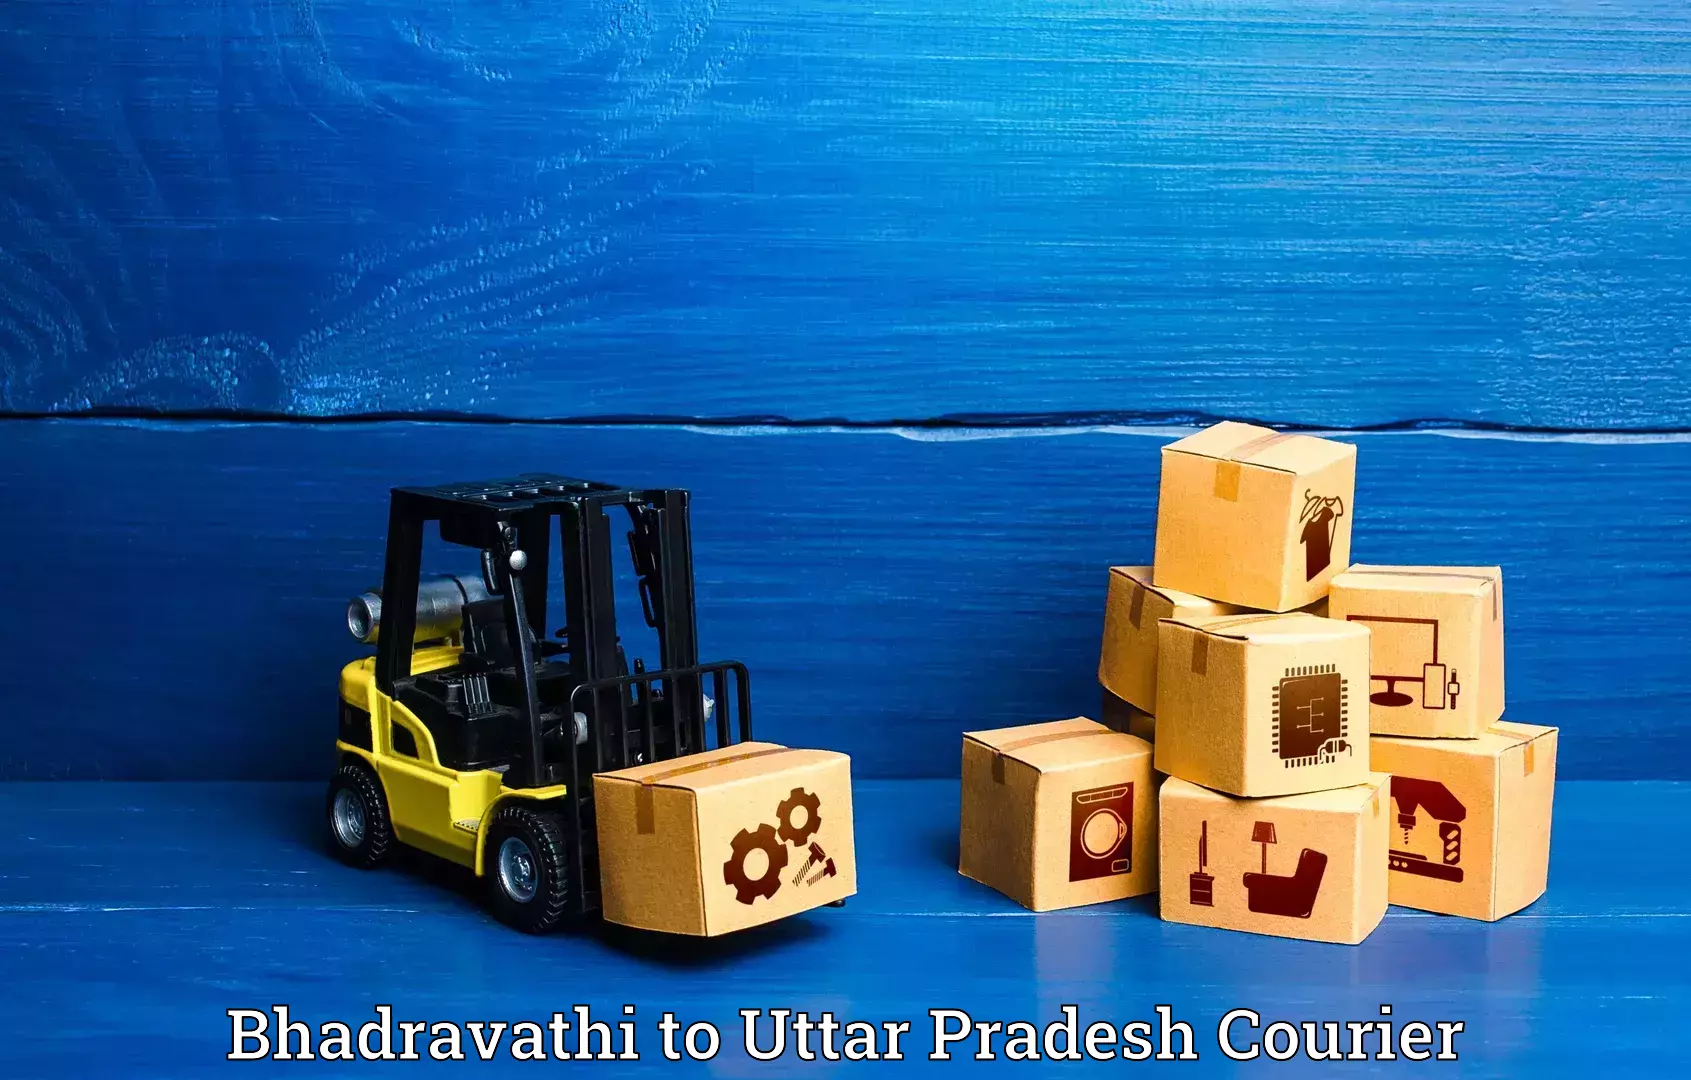 Luggage transport service Bhadravathi to Pukhrayan